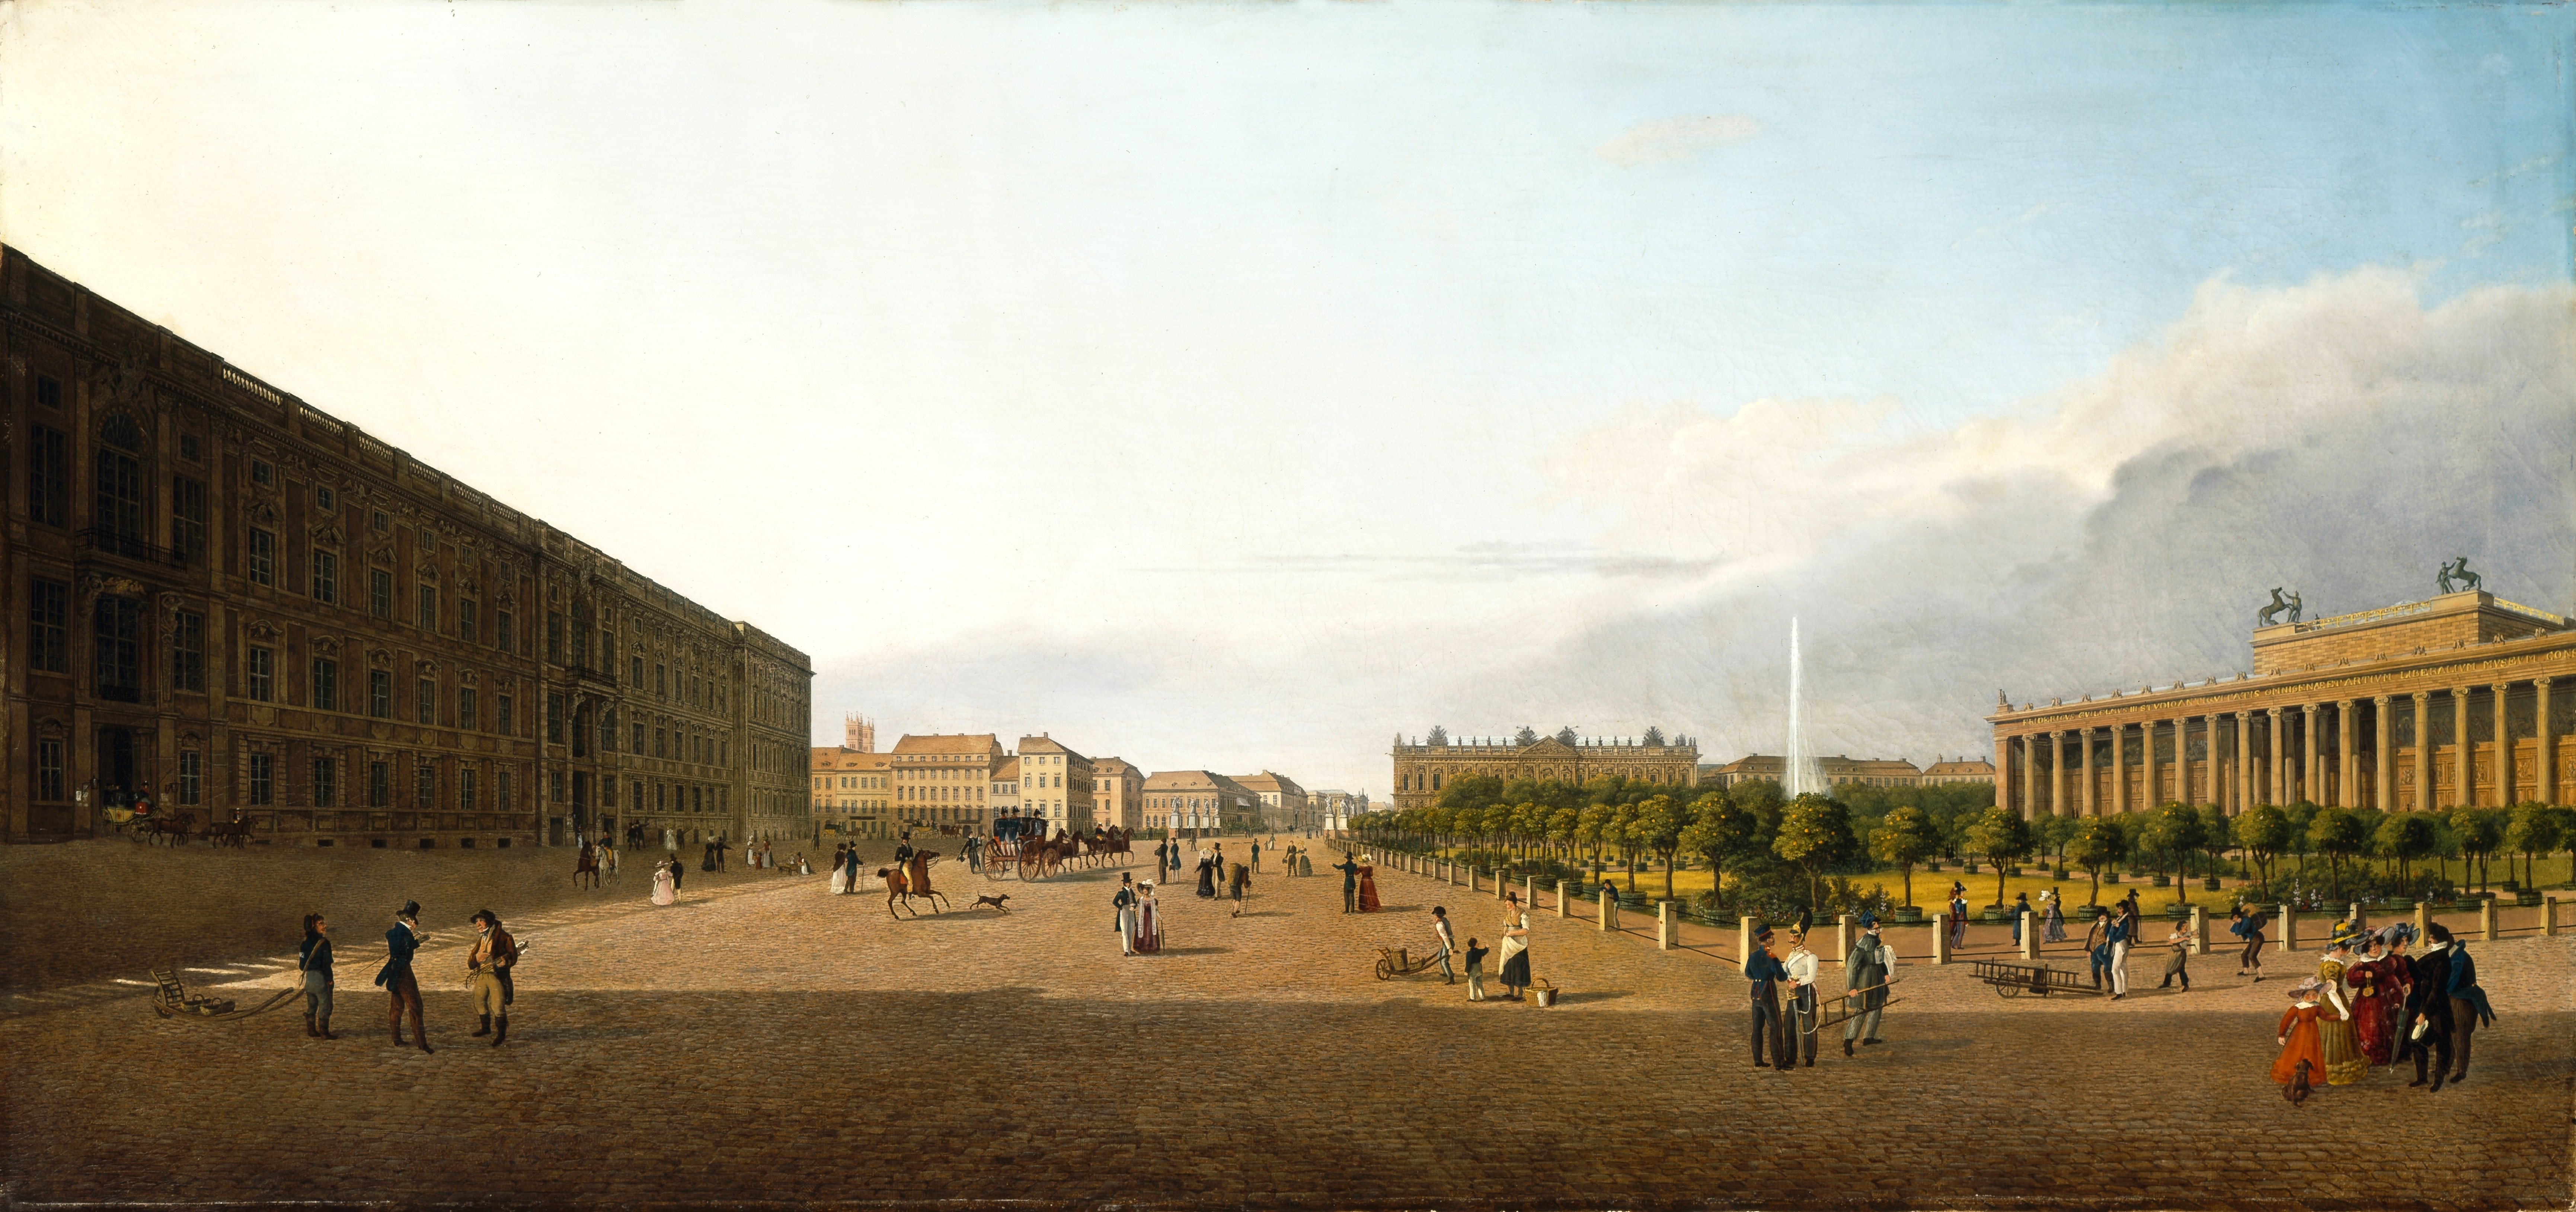 Hintze, Johann Heinrich: Lustgarten in Berlin, 1829, GK I 4398. (Stiftung Preußische Schlösser und Gärten Berlin-Brandenburg CC BY-NC-SA)